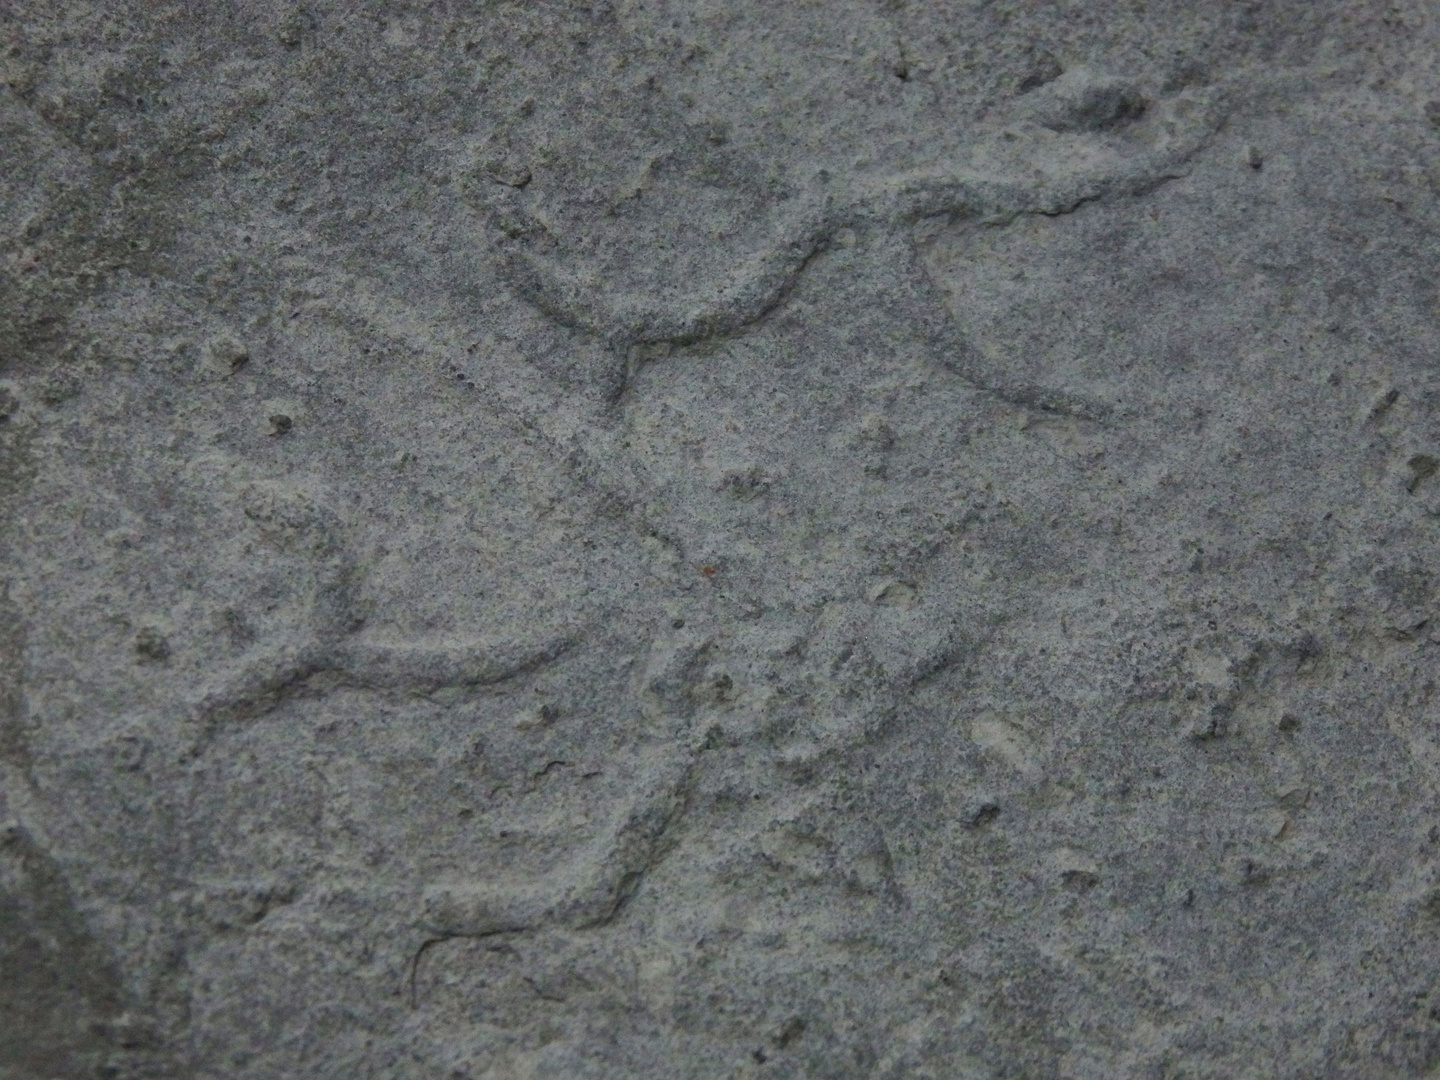 Spurenfossil aus der Kreidezeit - Cosmorhaphe